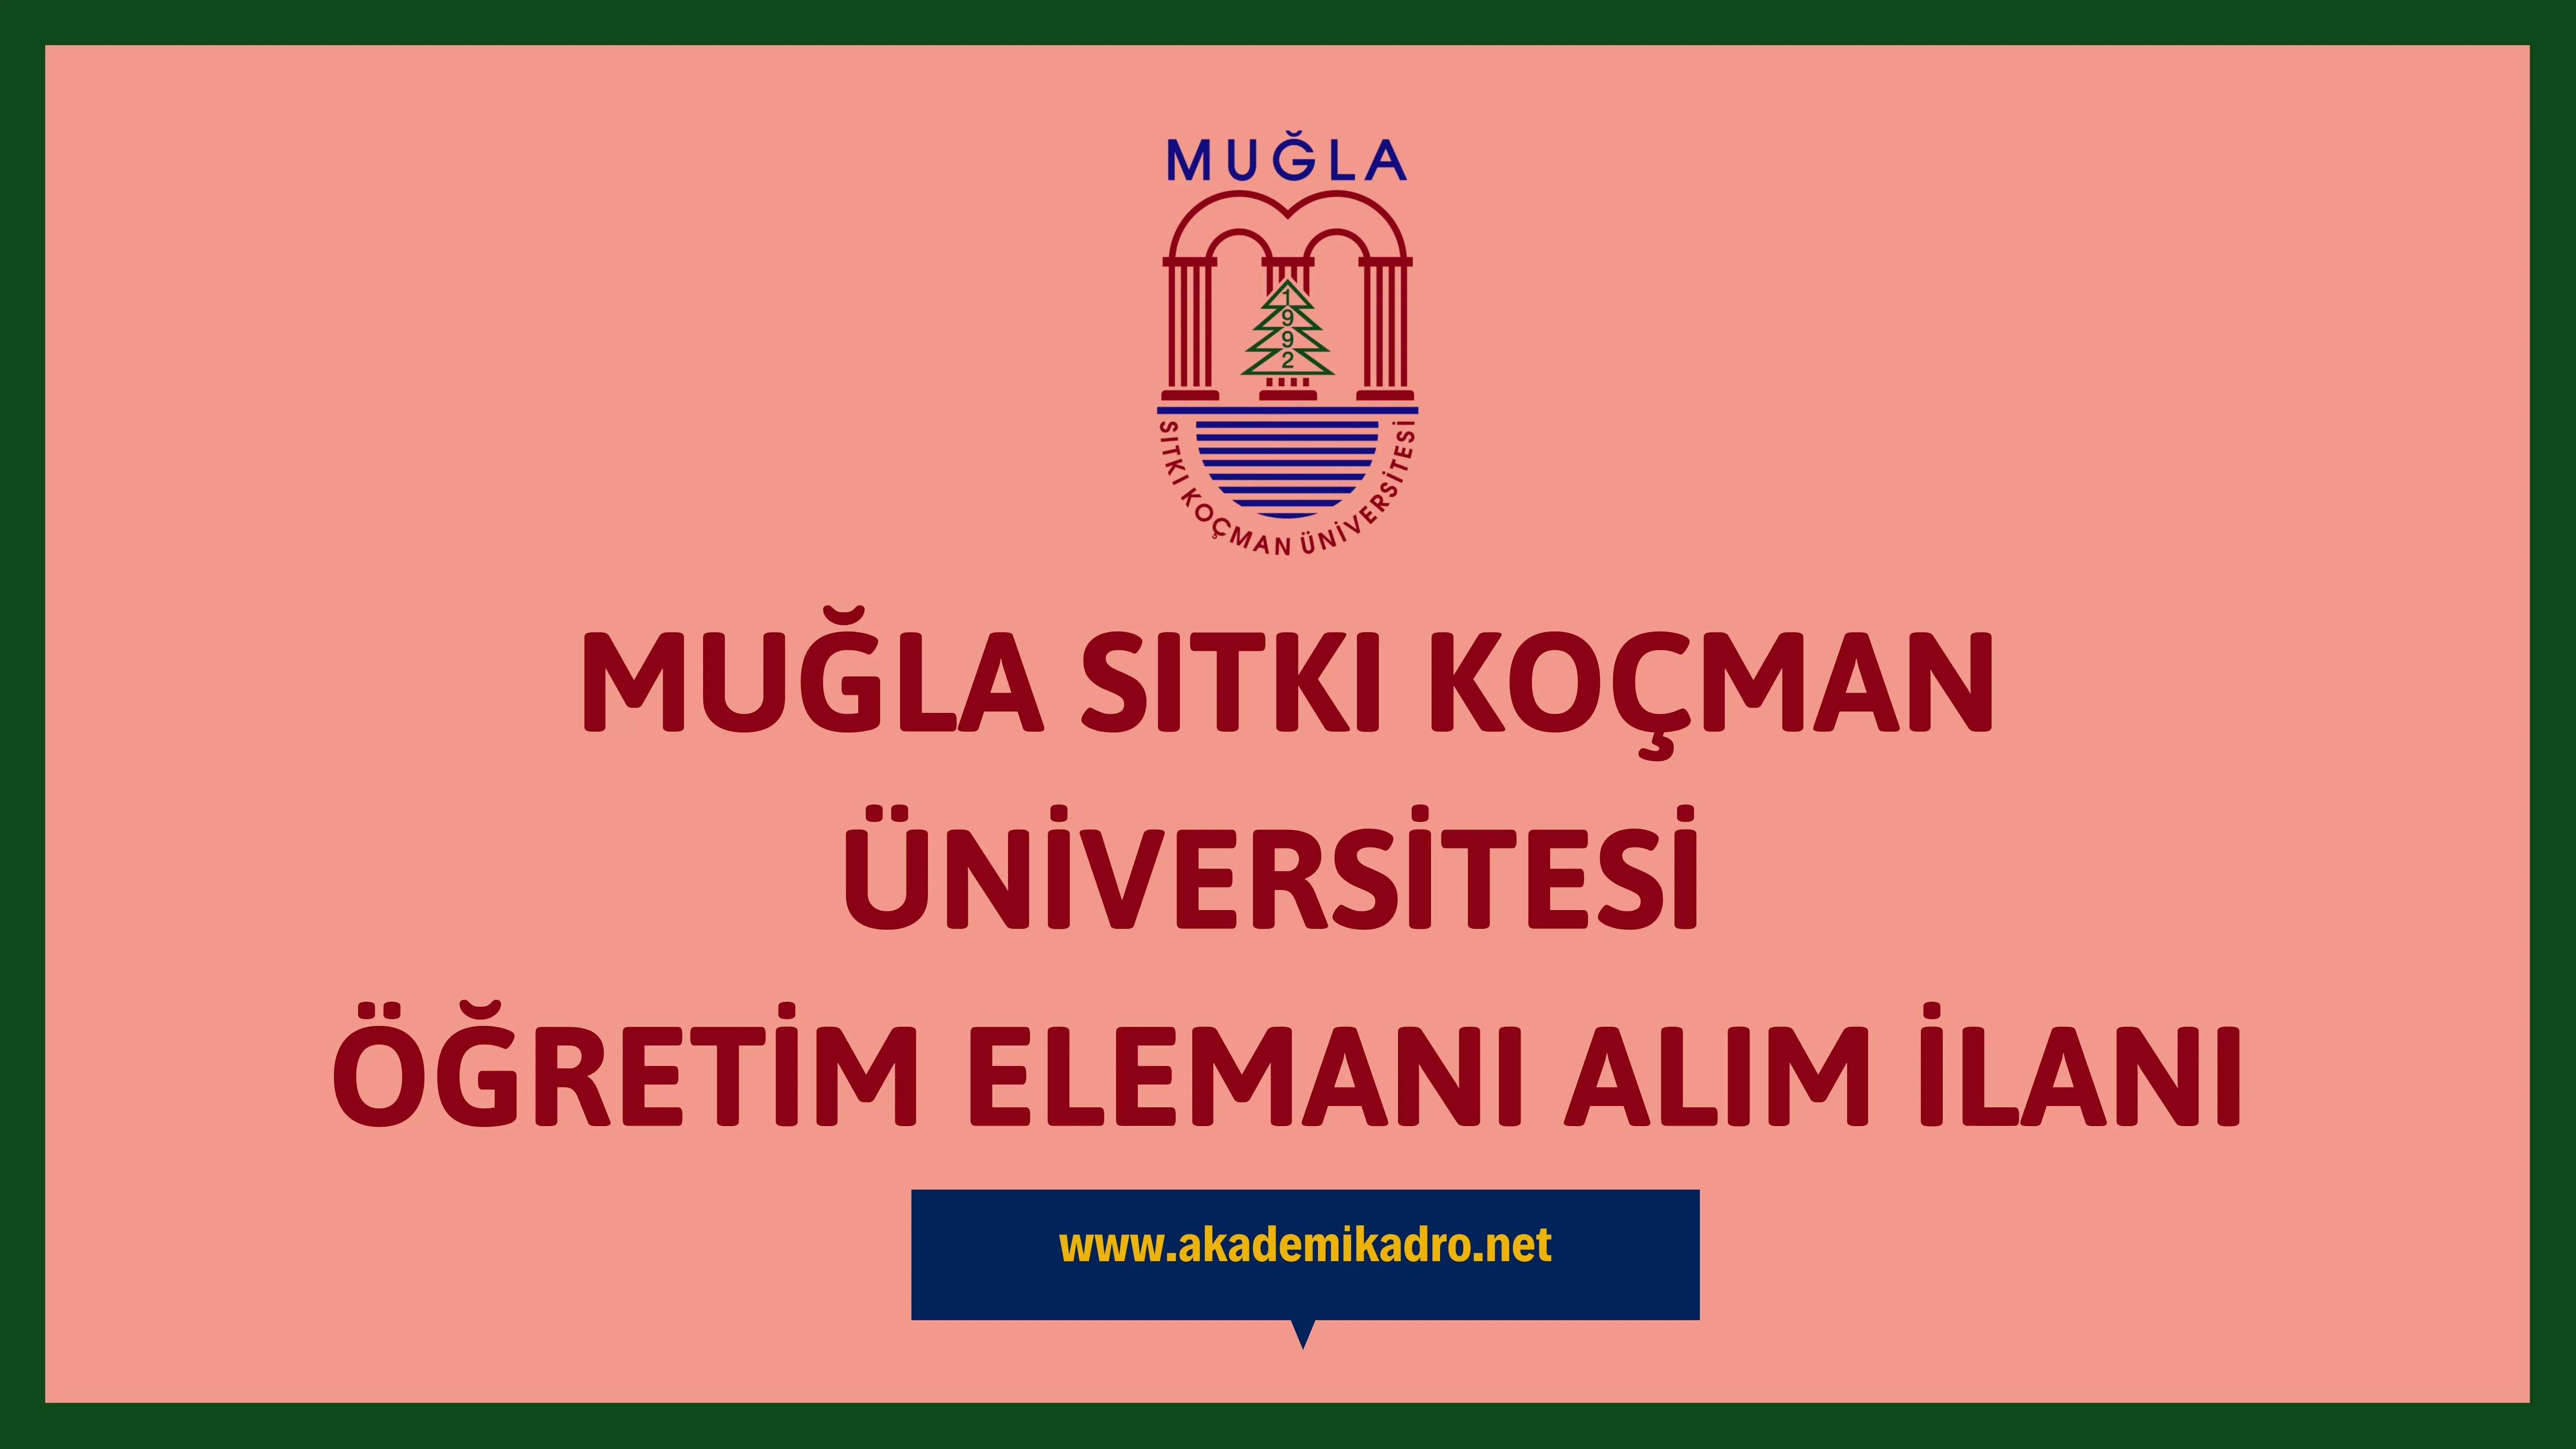 Muğla Sıtkı Koçman Üniversitesi 13 öğretim üyesi alacaktır.